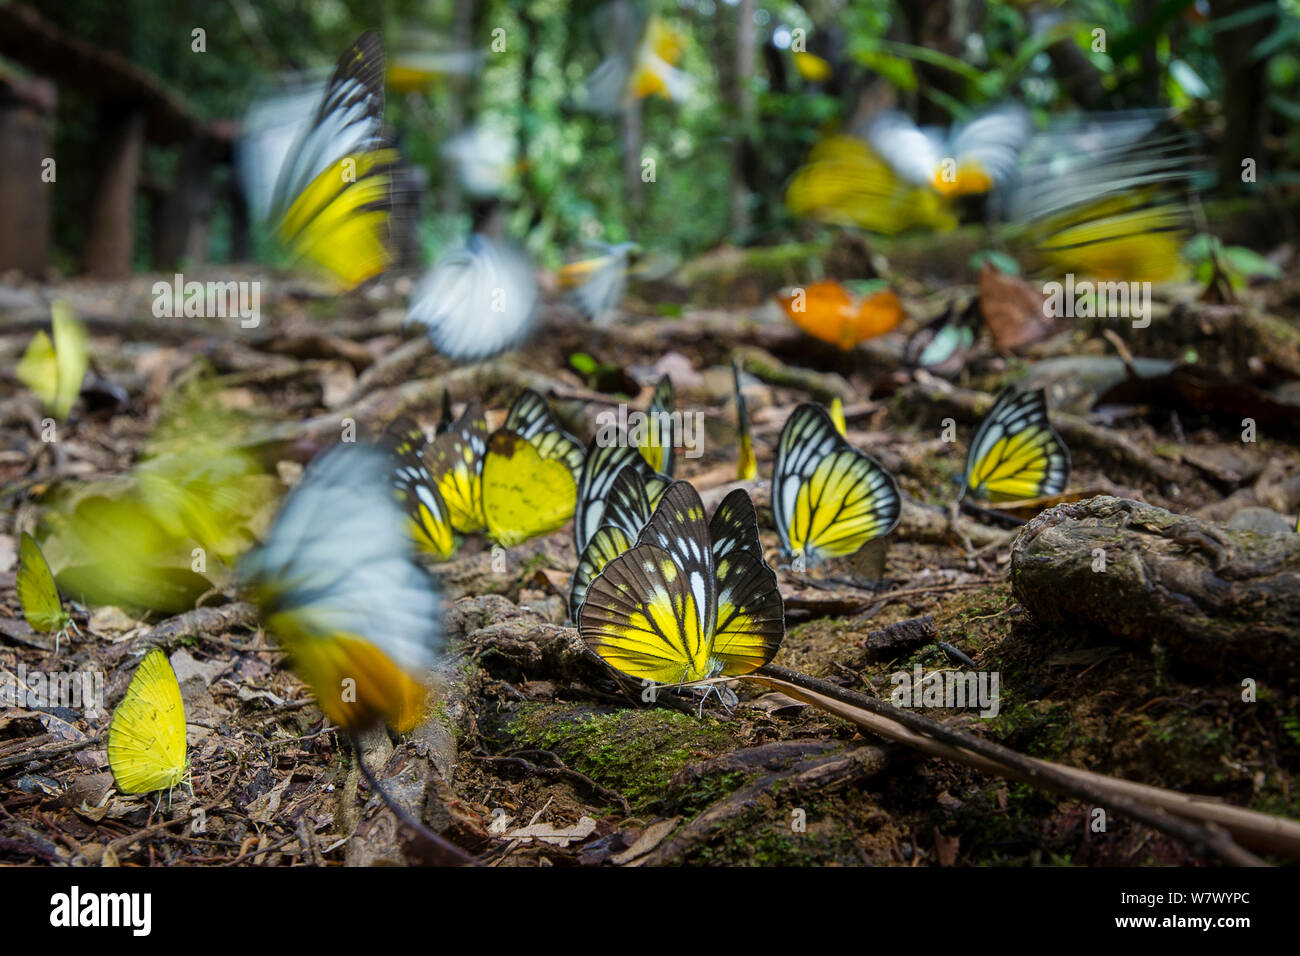 L'agrégation des papillons - principalement de scie Bornéo (Prioneris Cornelia), émigrant jaune (Catopsilia scylla) et orange (gull Cepora iudith) prise de minéraux à partir de forêt tropicale humide sur sol. Parc national de Temburong, Brunei, Bornéo. Banque D'Images